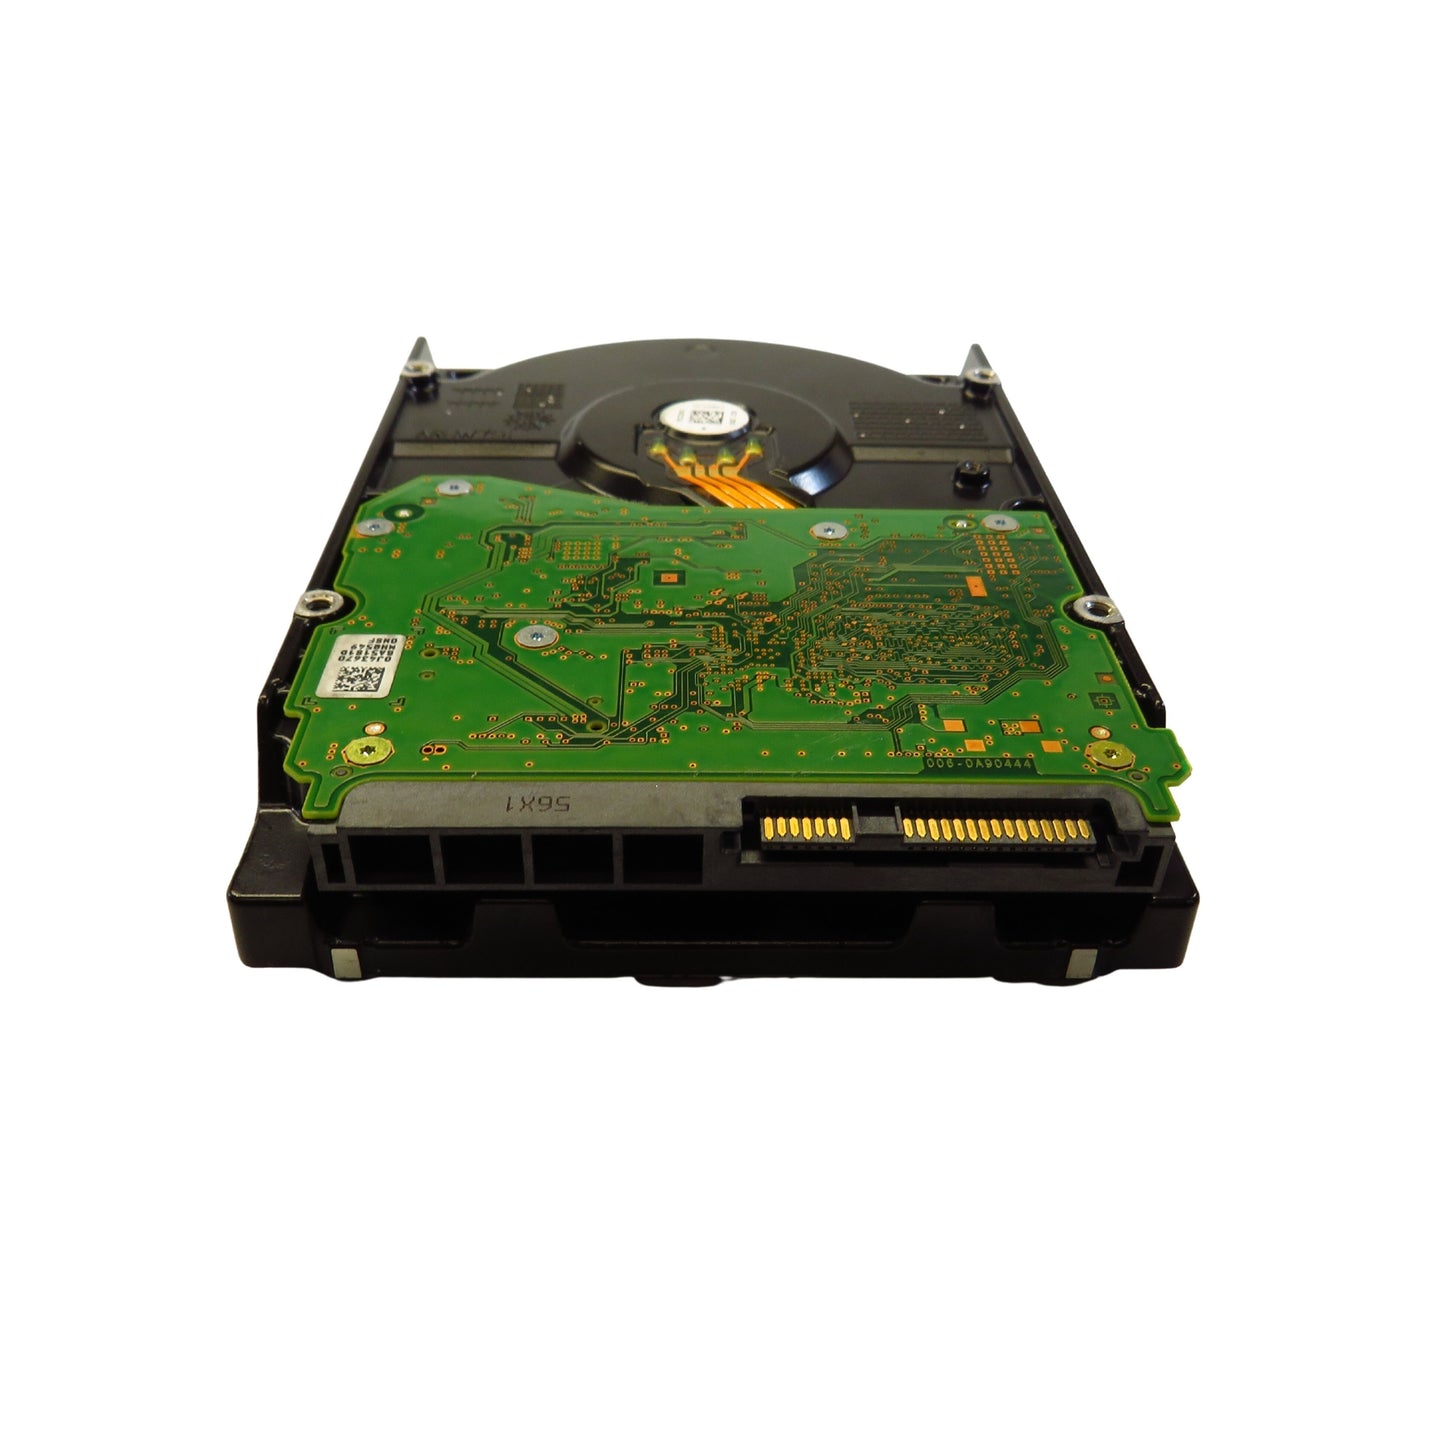 HGST 0F23268 HUH728080AL5200 8TB 3.5" SAS 12Gbps 7.2K RPM HDD Hard Drive (Refurbished)